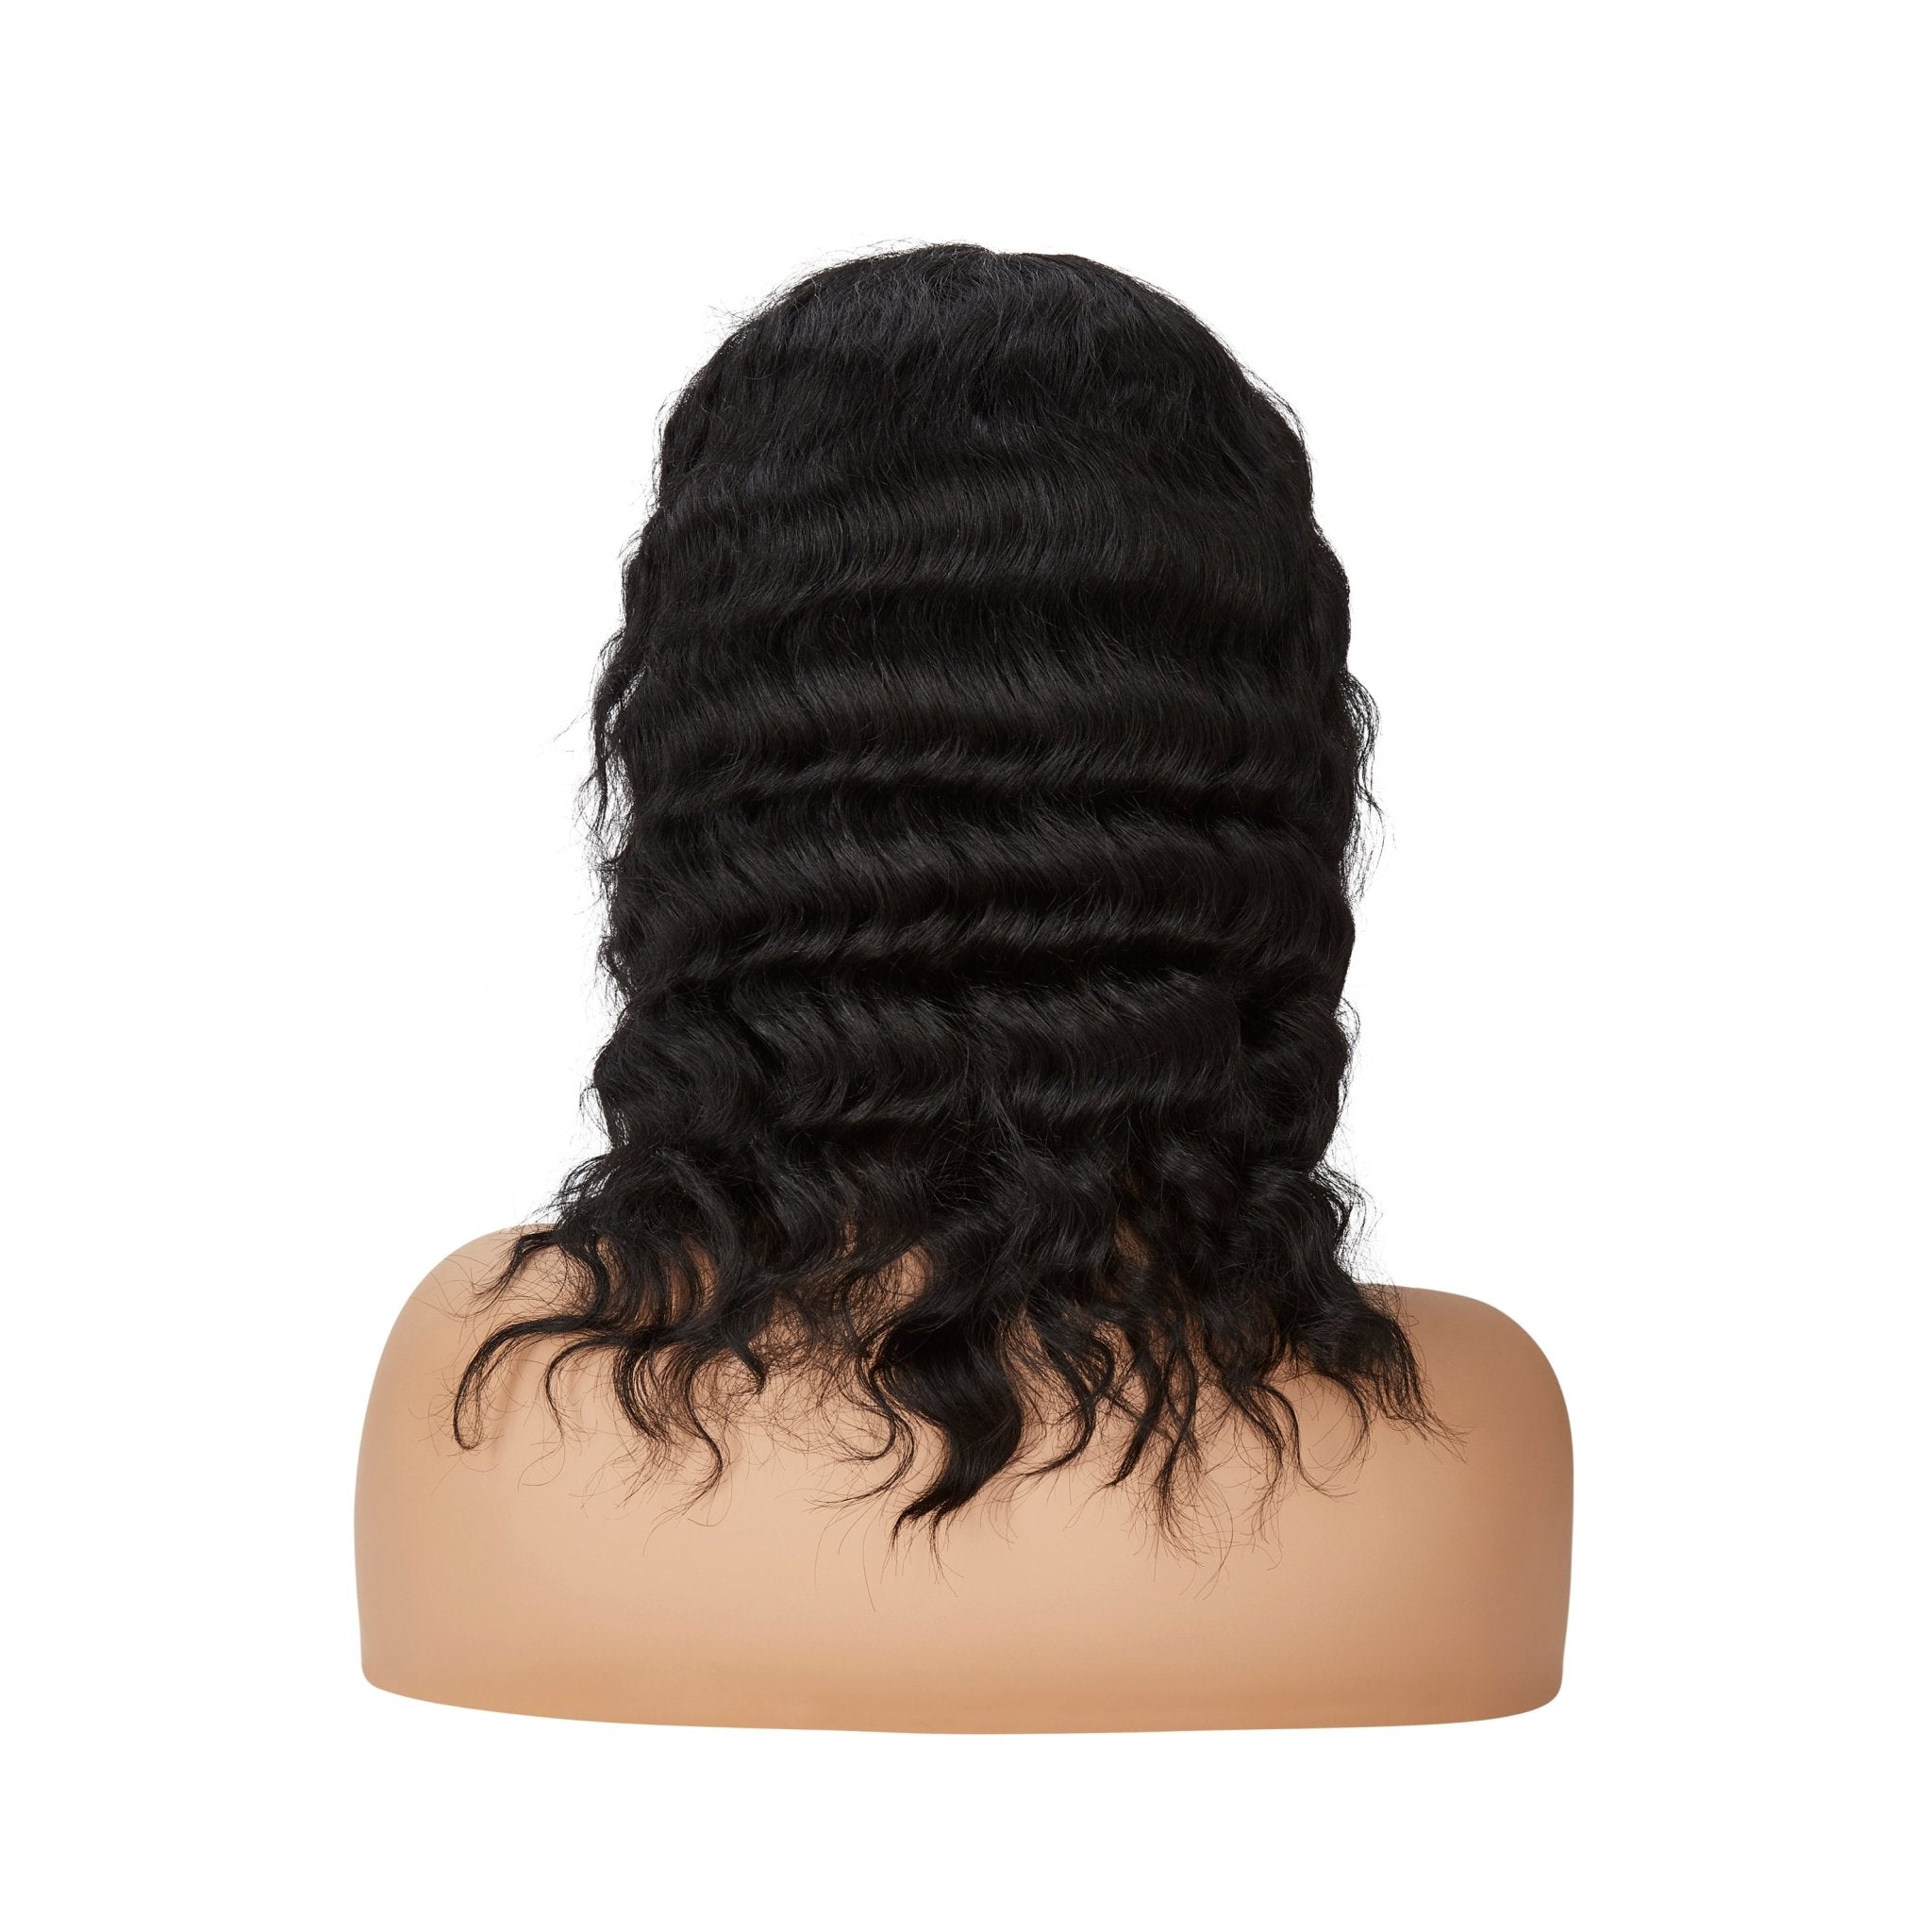 Human Hair Lace Wig - Wavy Natural Black - Beauty Hair Products Ltd